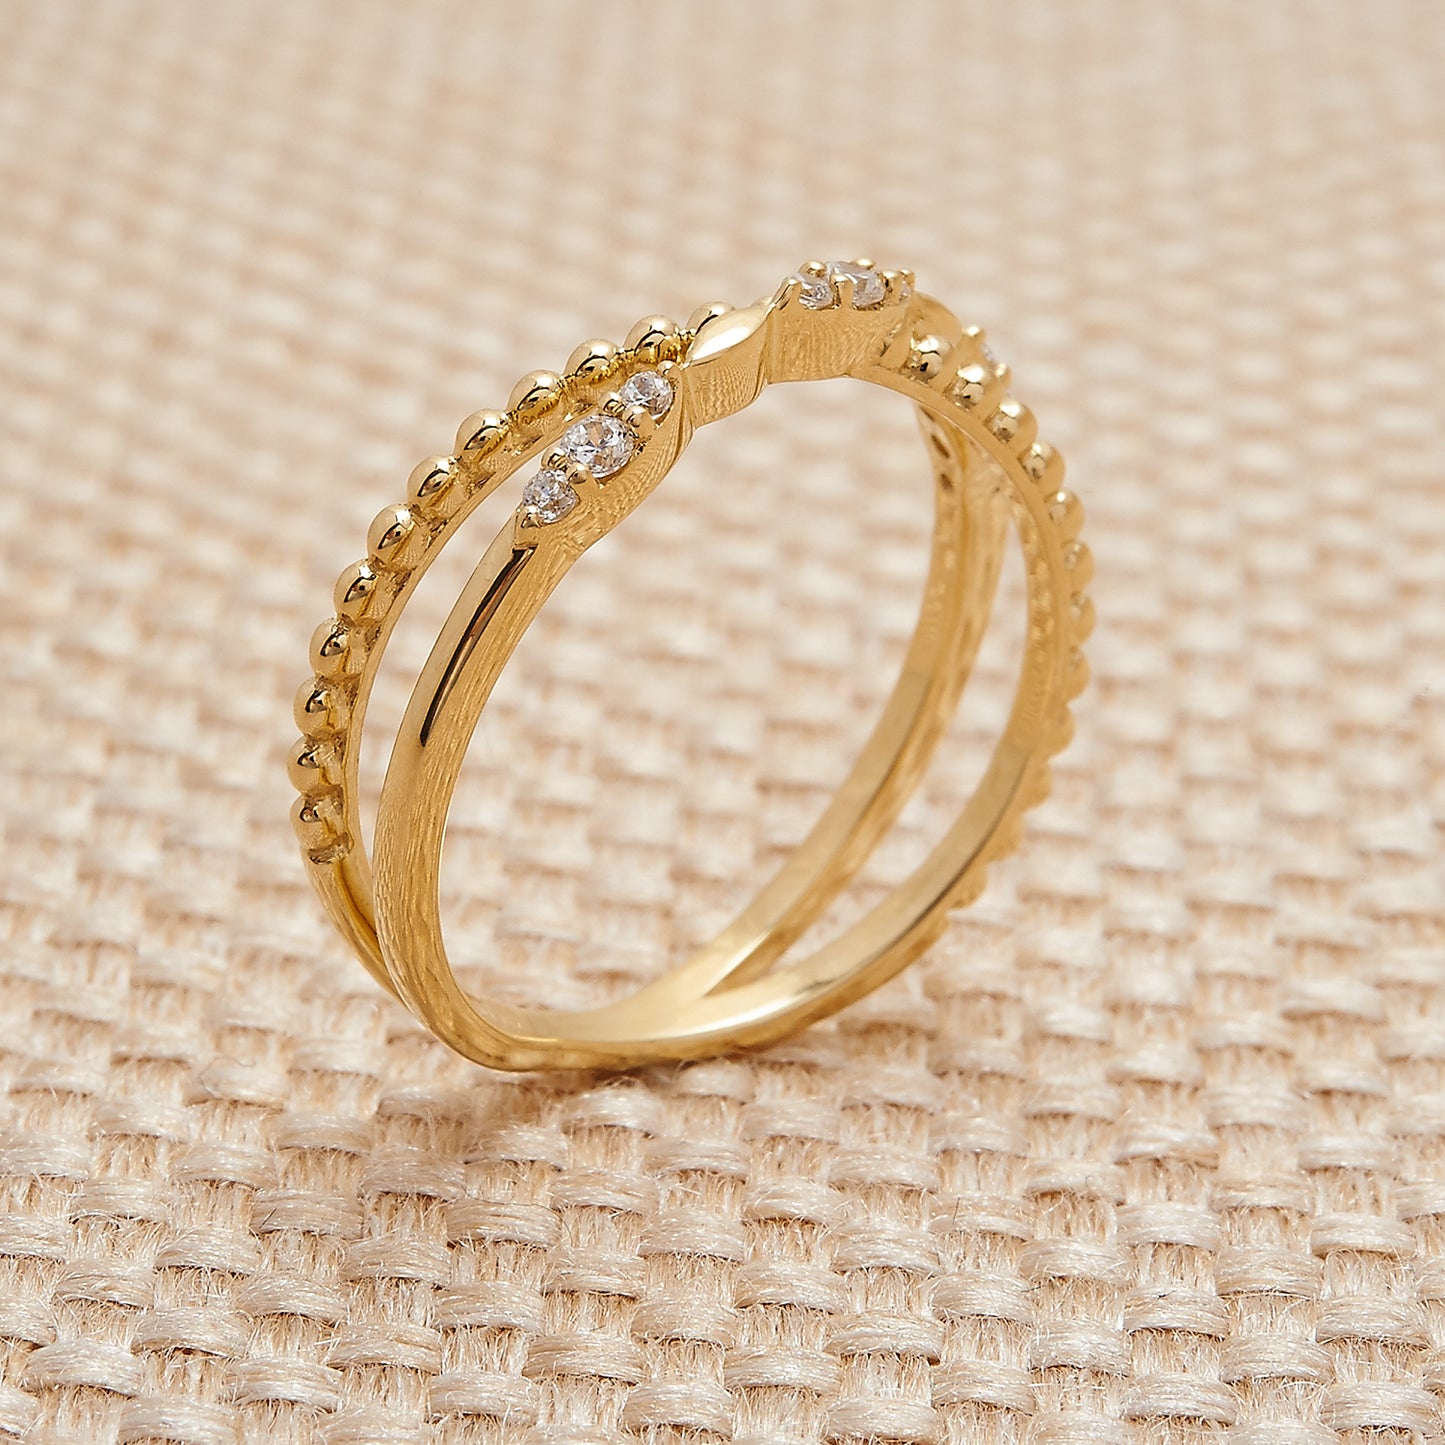 Rami Diamond Criss Cross Ring in Yellow Gold